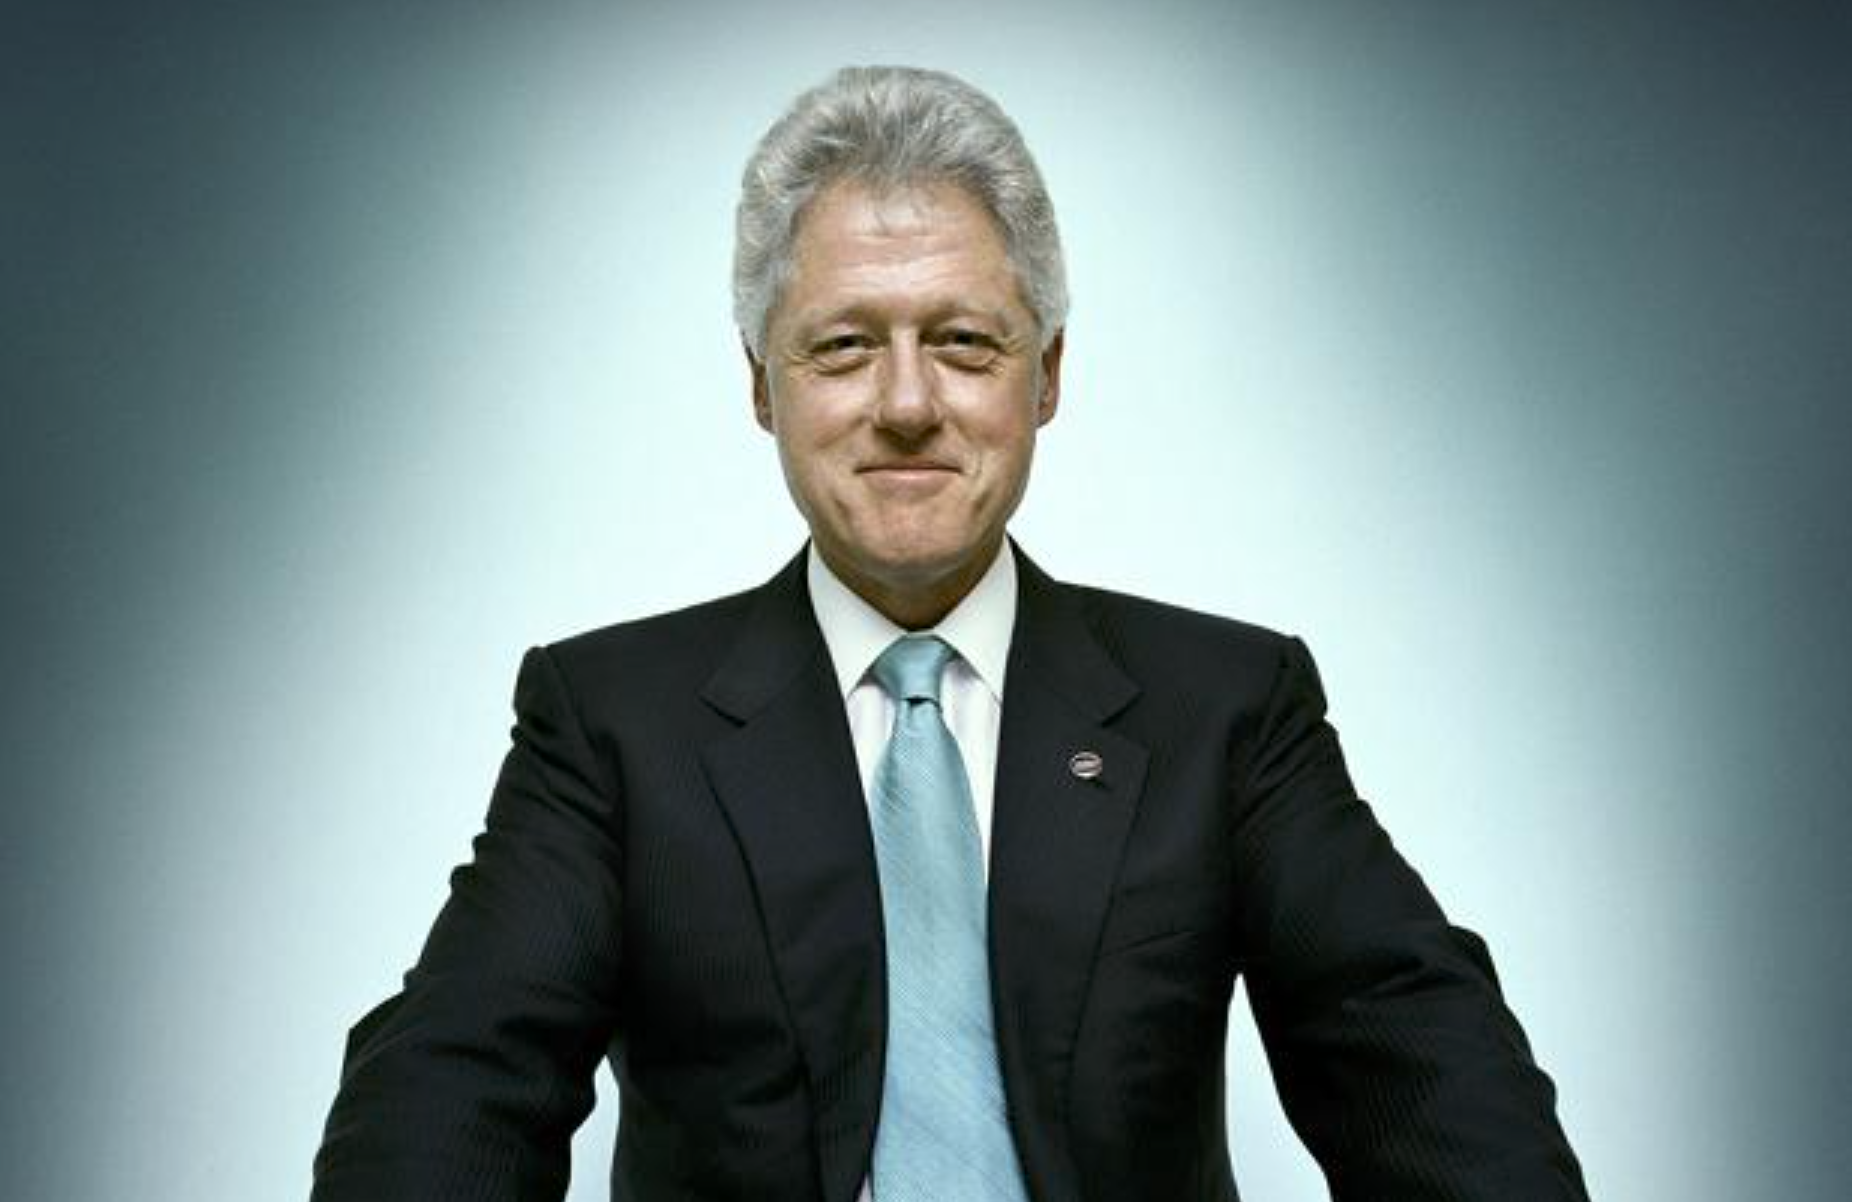 Análisis de una foto: Bill Clinton por Platon Antoniou